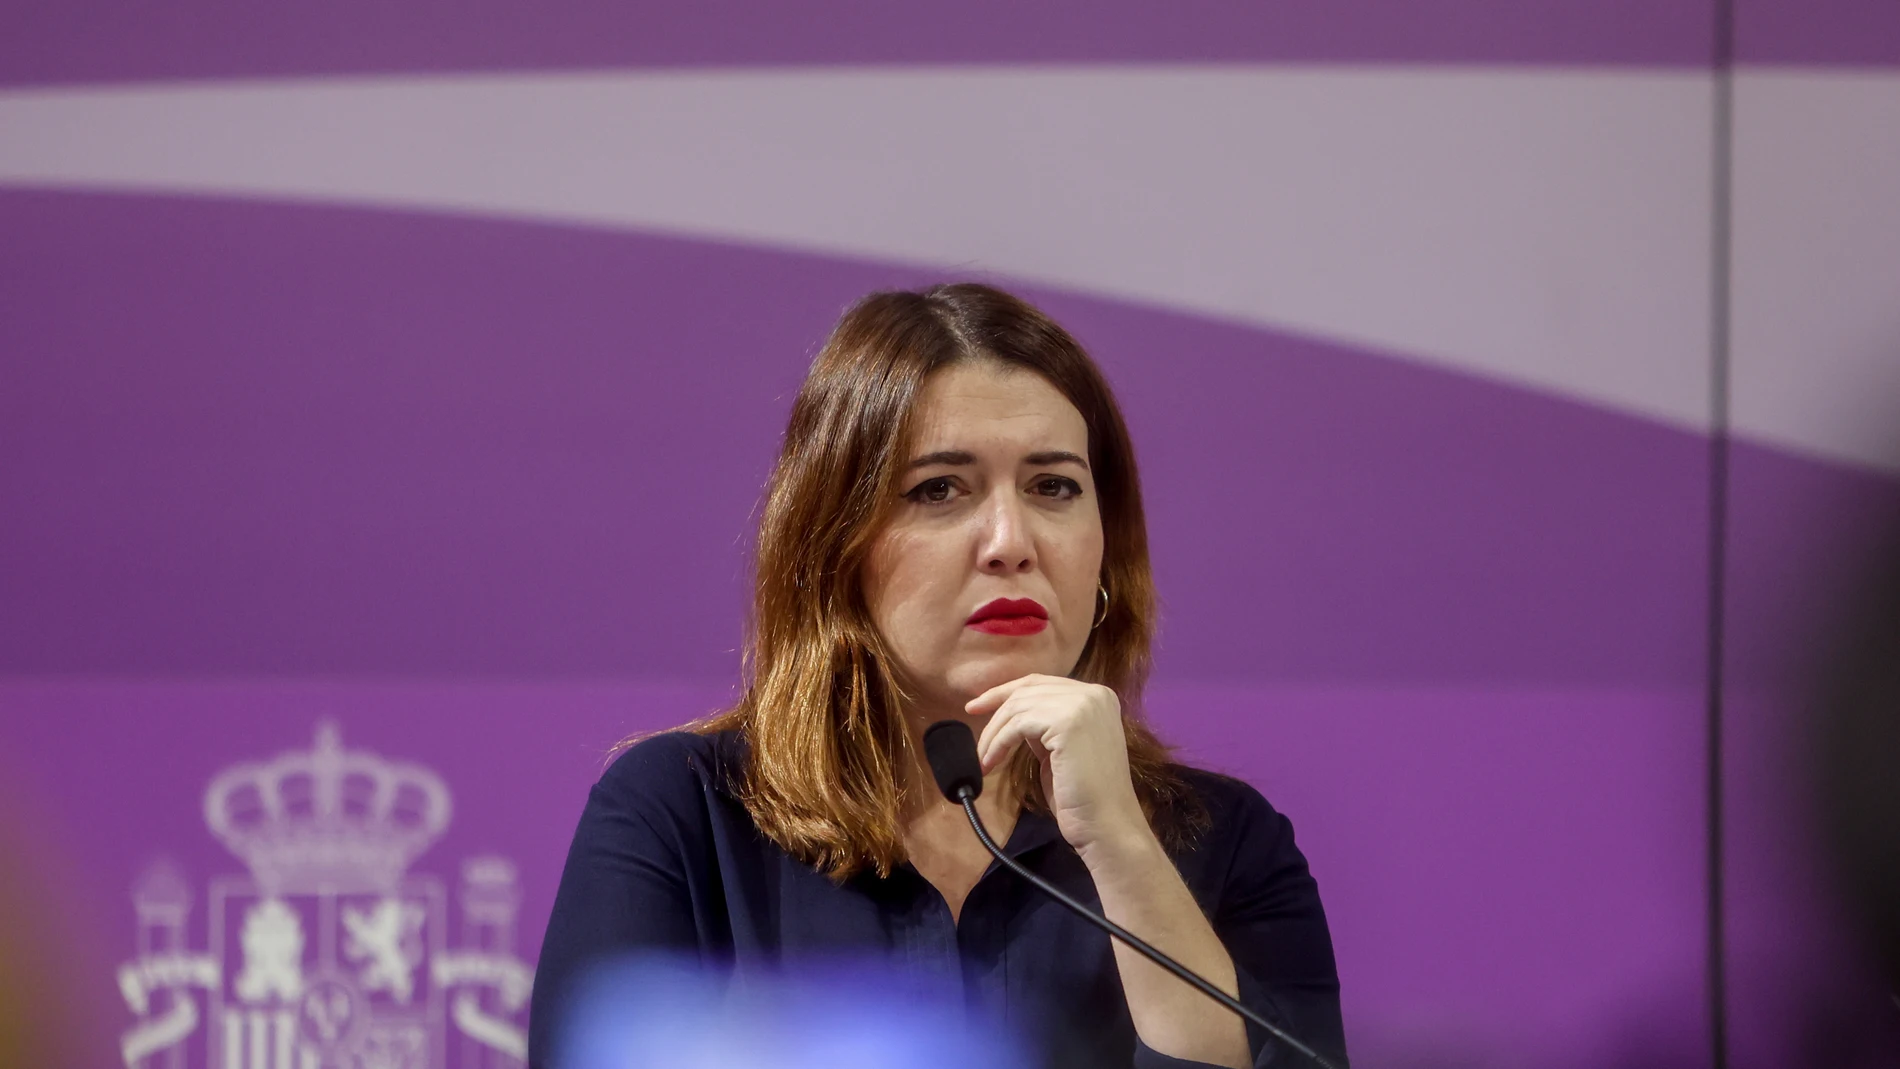 La secretaria de Estado de Igualdad y contra la Violencia de Género, Ángela Rodríguez Pam.